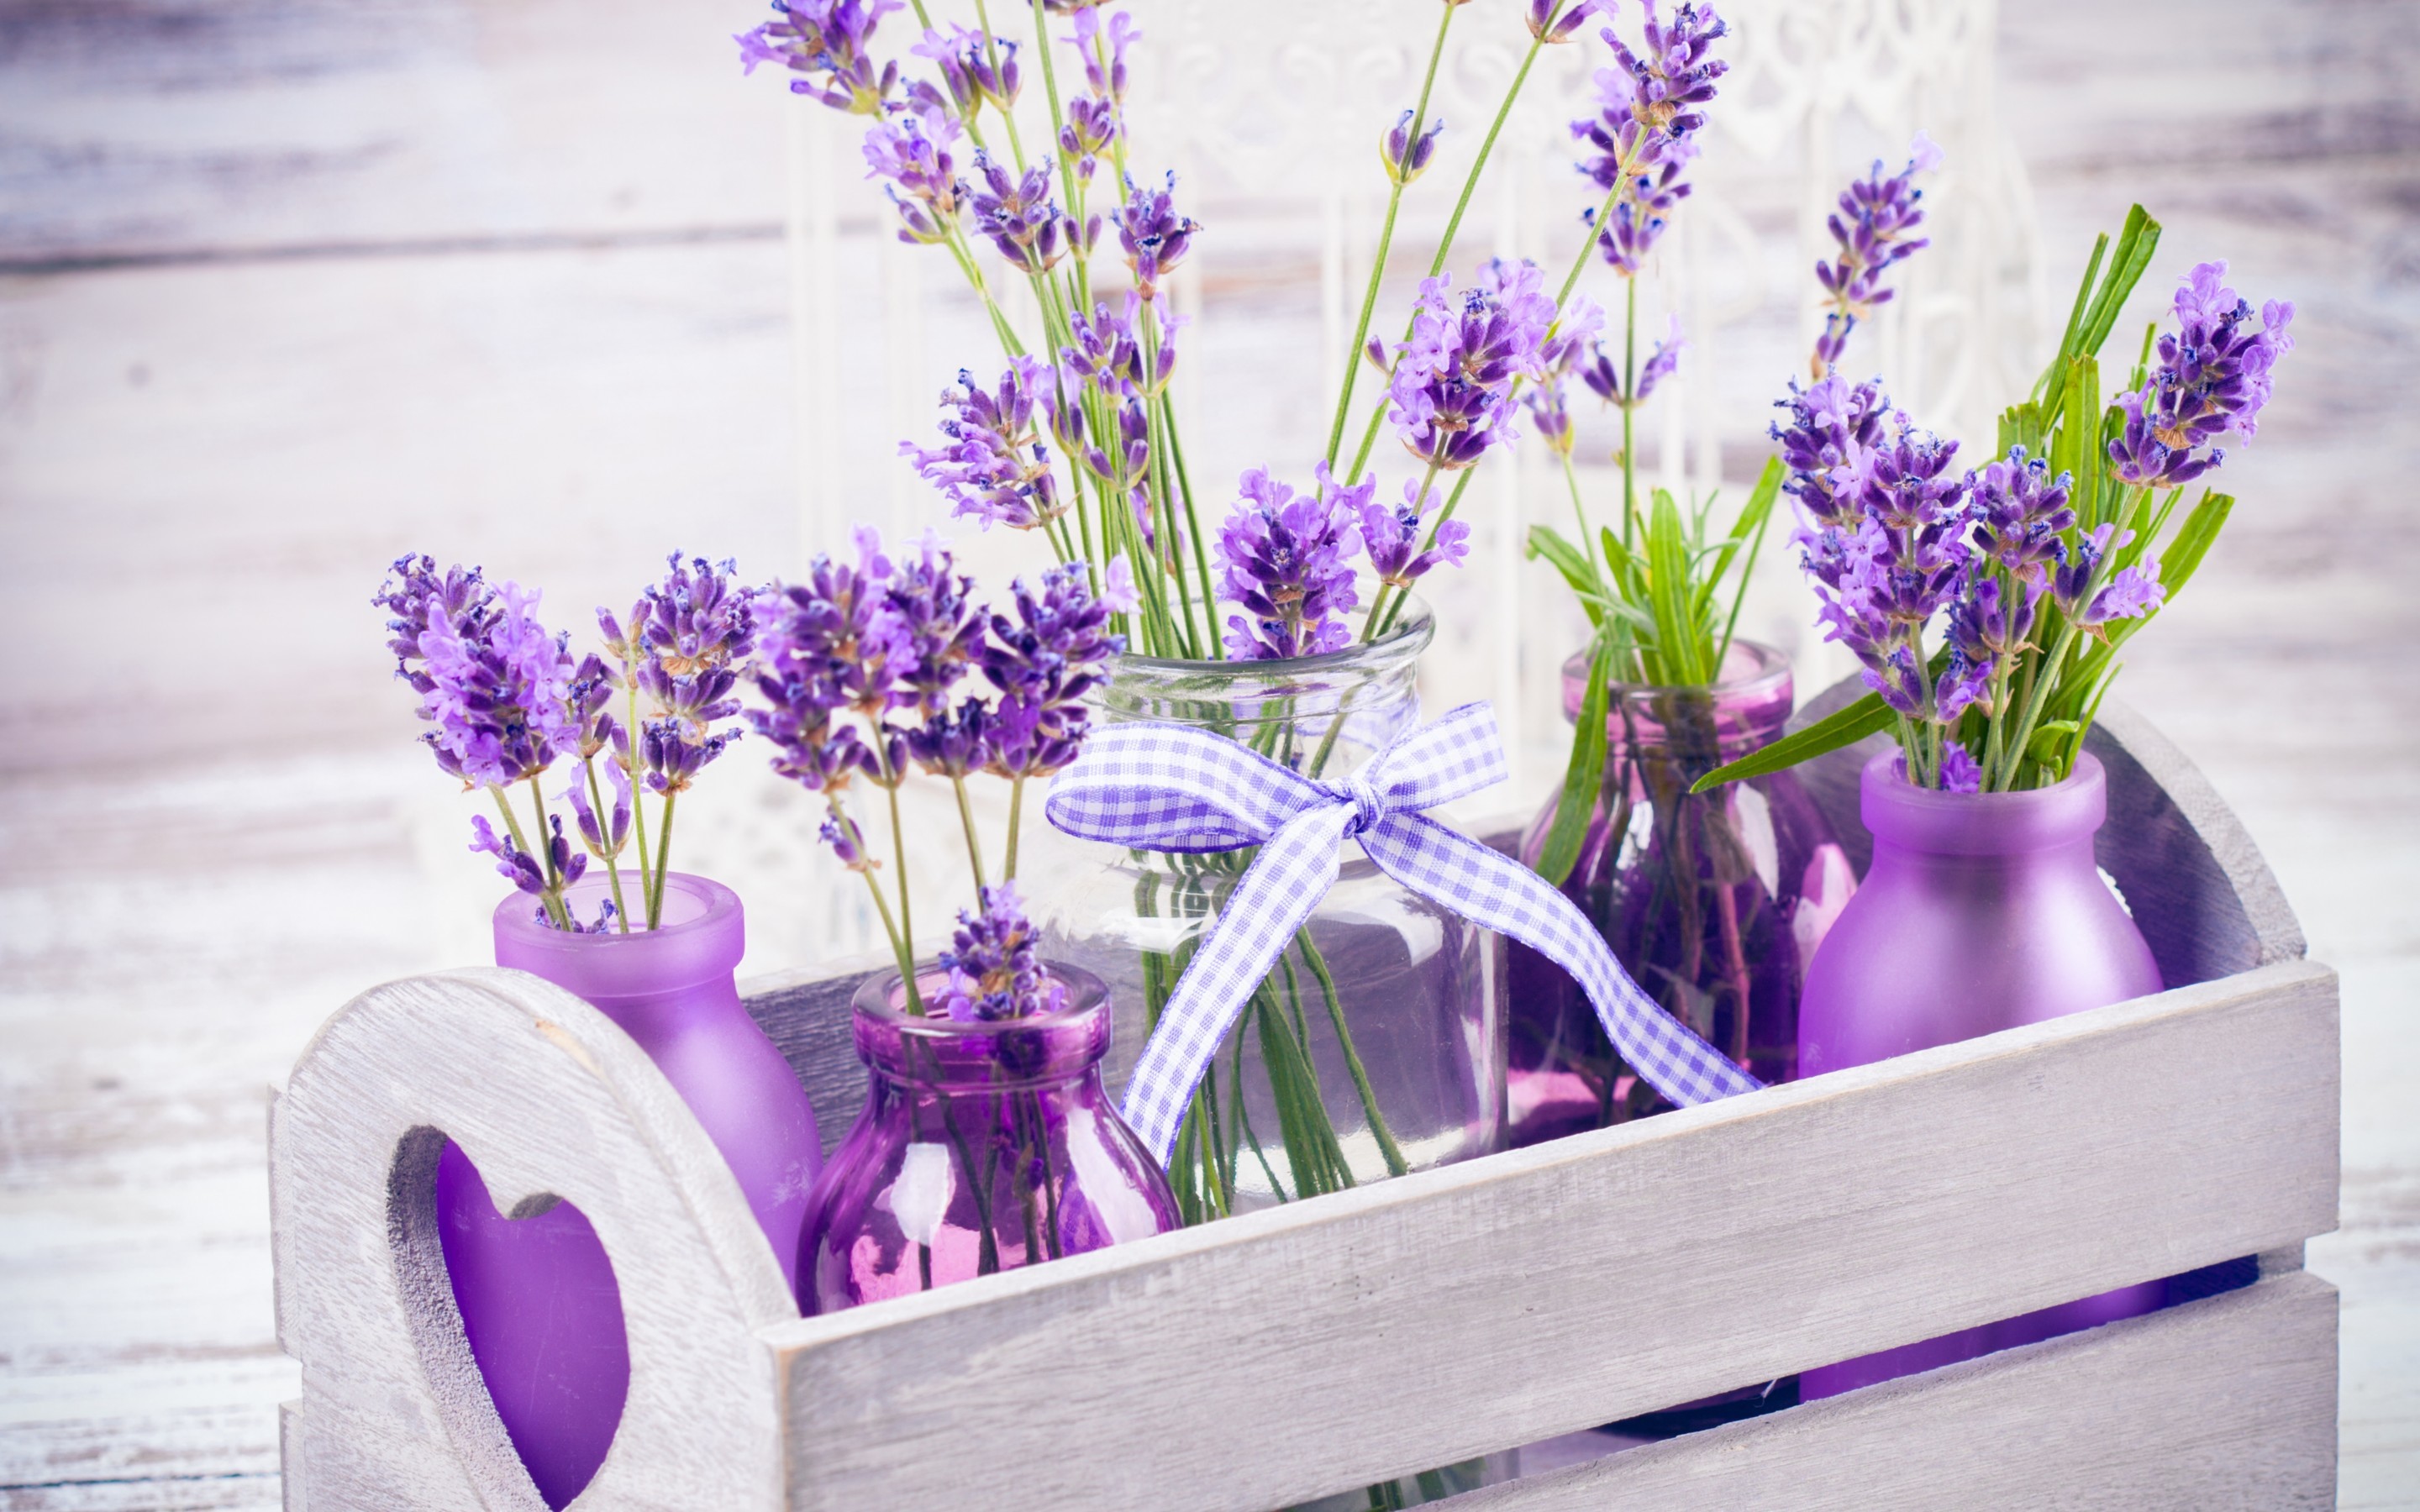 Lavender là loại hoa mang lại sự yên bình và thư giãn. Hình ảnh liên quan đến Lavender sẽ khiến cho người dùng tò mò và muốn tìm hiểu thêm về tính năng và công dụng của loại hoa này trong cuộc sống hàng ngày.